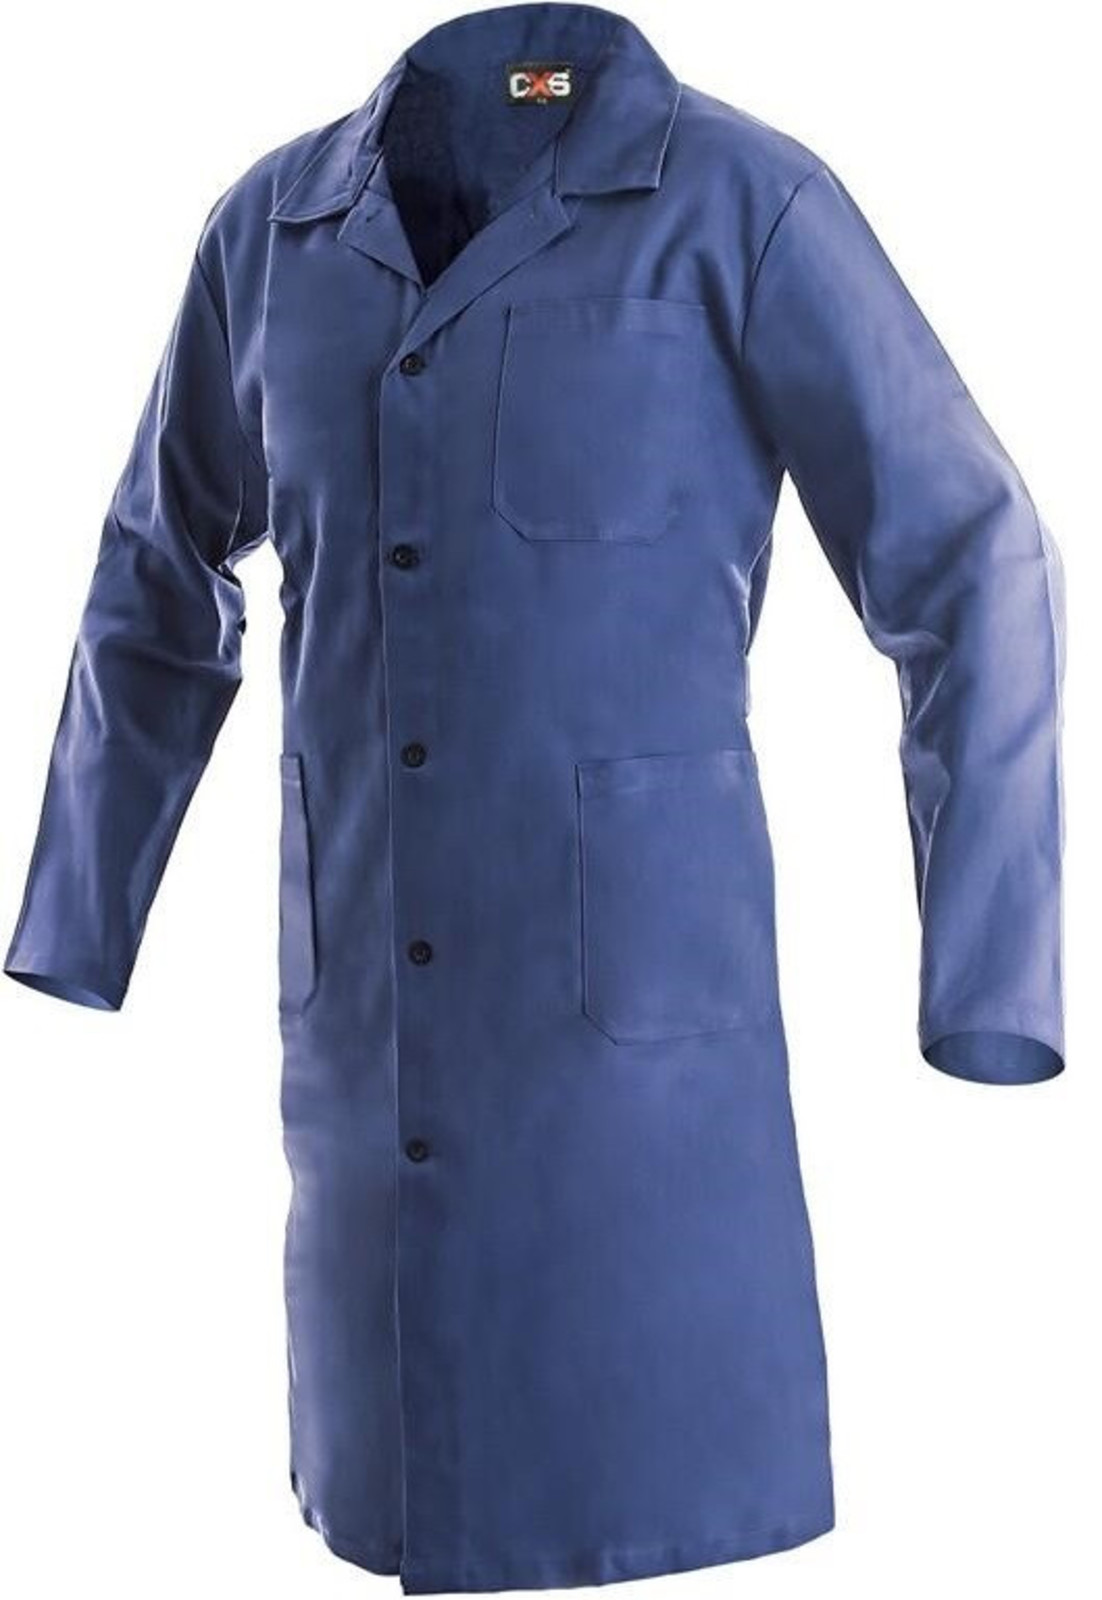 Pánsky pracovný plášť CXS Klasik Venca - veľkosť: 50, farba: modrá